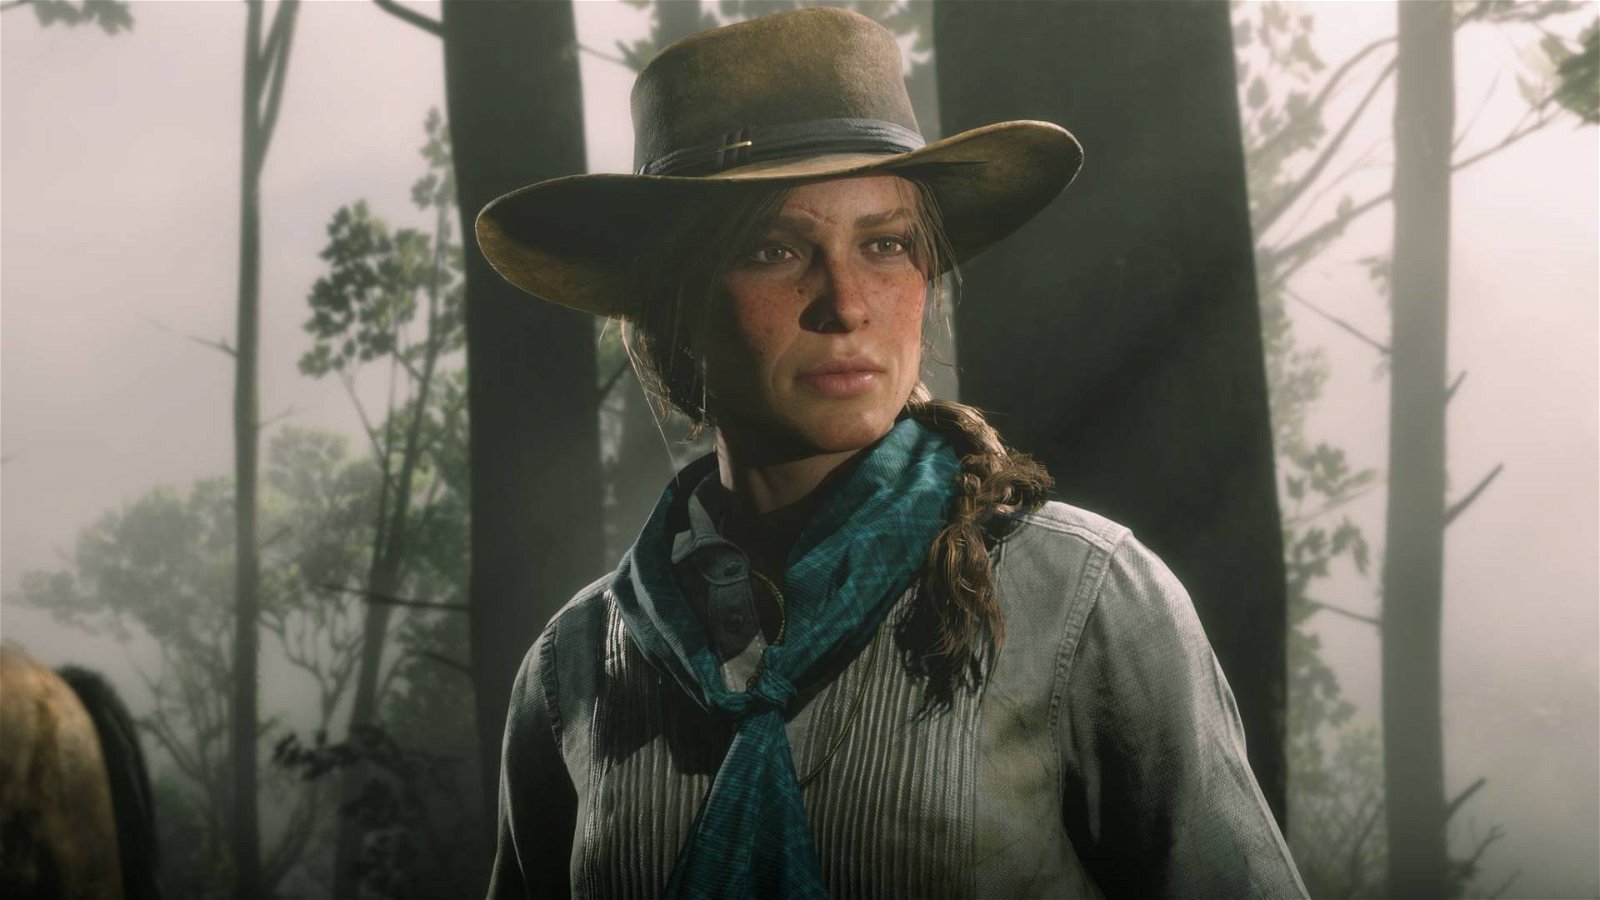 Immagine di Red Dead Redemption 3 e la protagonista femminile, realtà o fantasia?